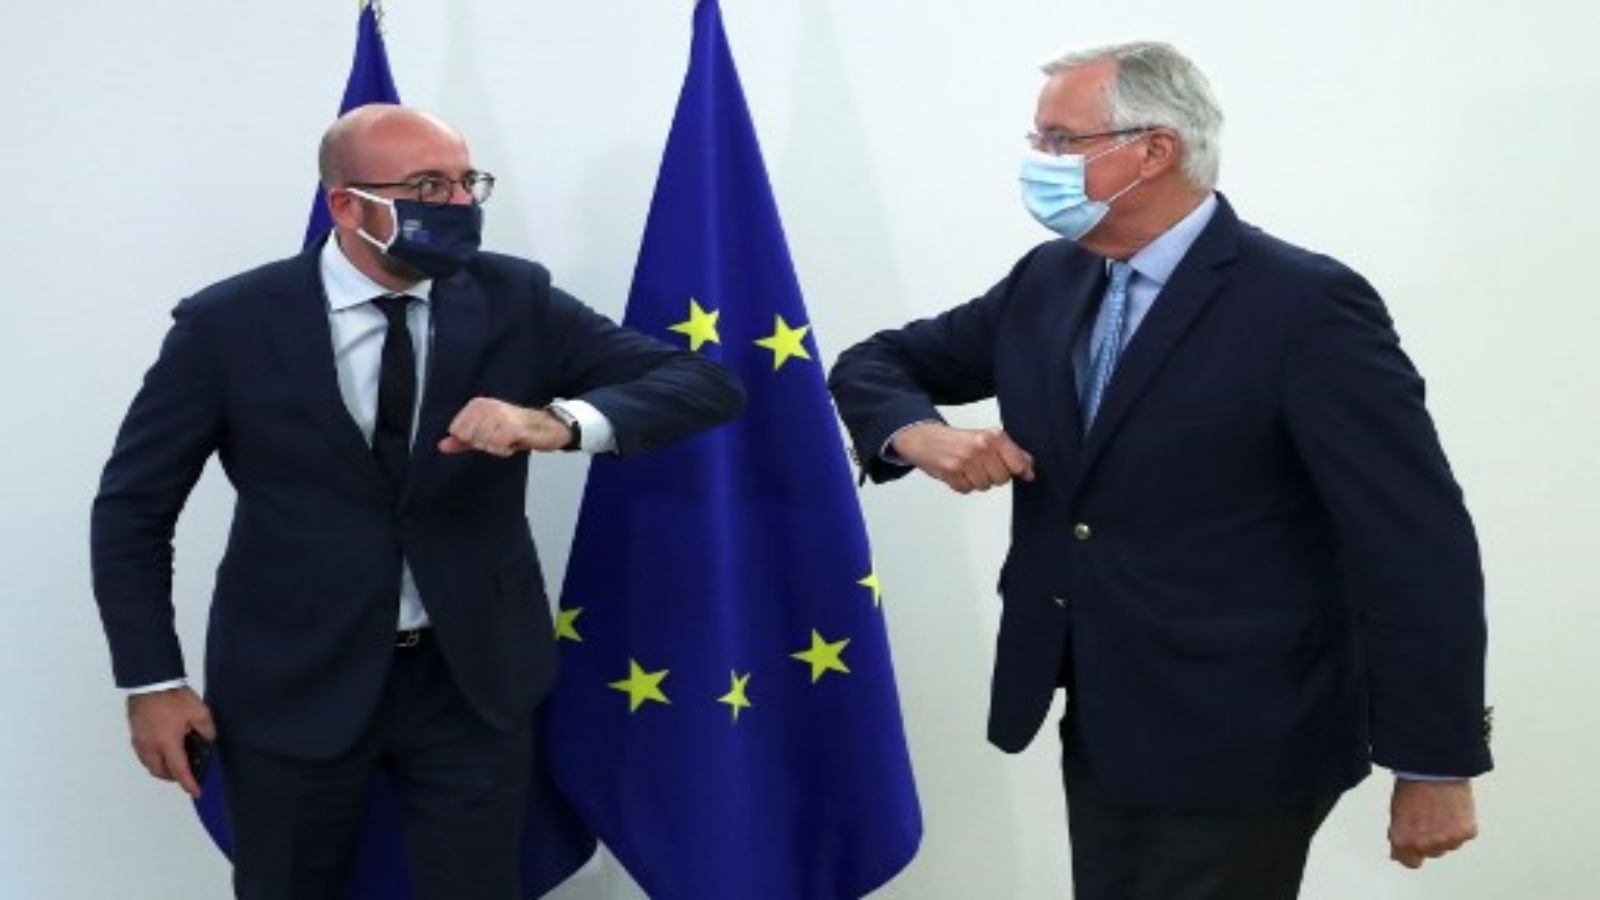 مفاوض الاتحاد الأوروبي بشأن خروج بريطانيا من الاتحاد الأوروبي ميشيل بارنييه ورئيس المجلس الأوروبي تشارلز ميشيل (يسار) ، يرتدون أقنعة ونفث الكوع في بروكسل في 18 سبتمبر 2020